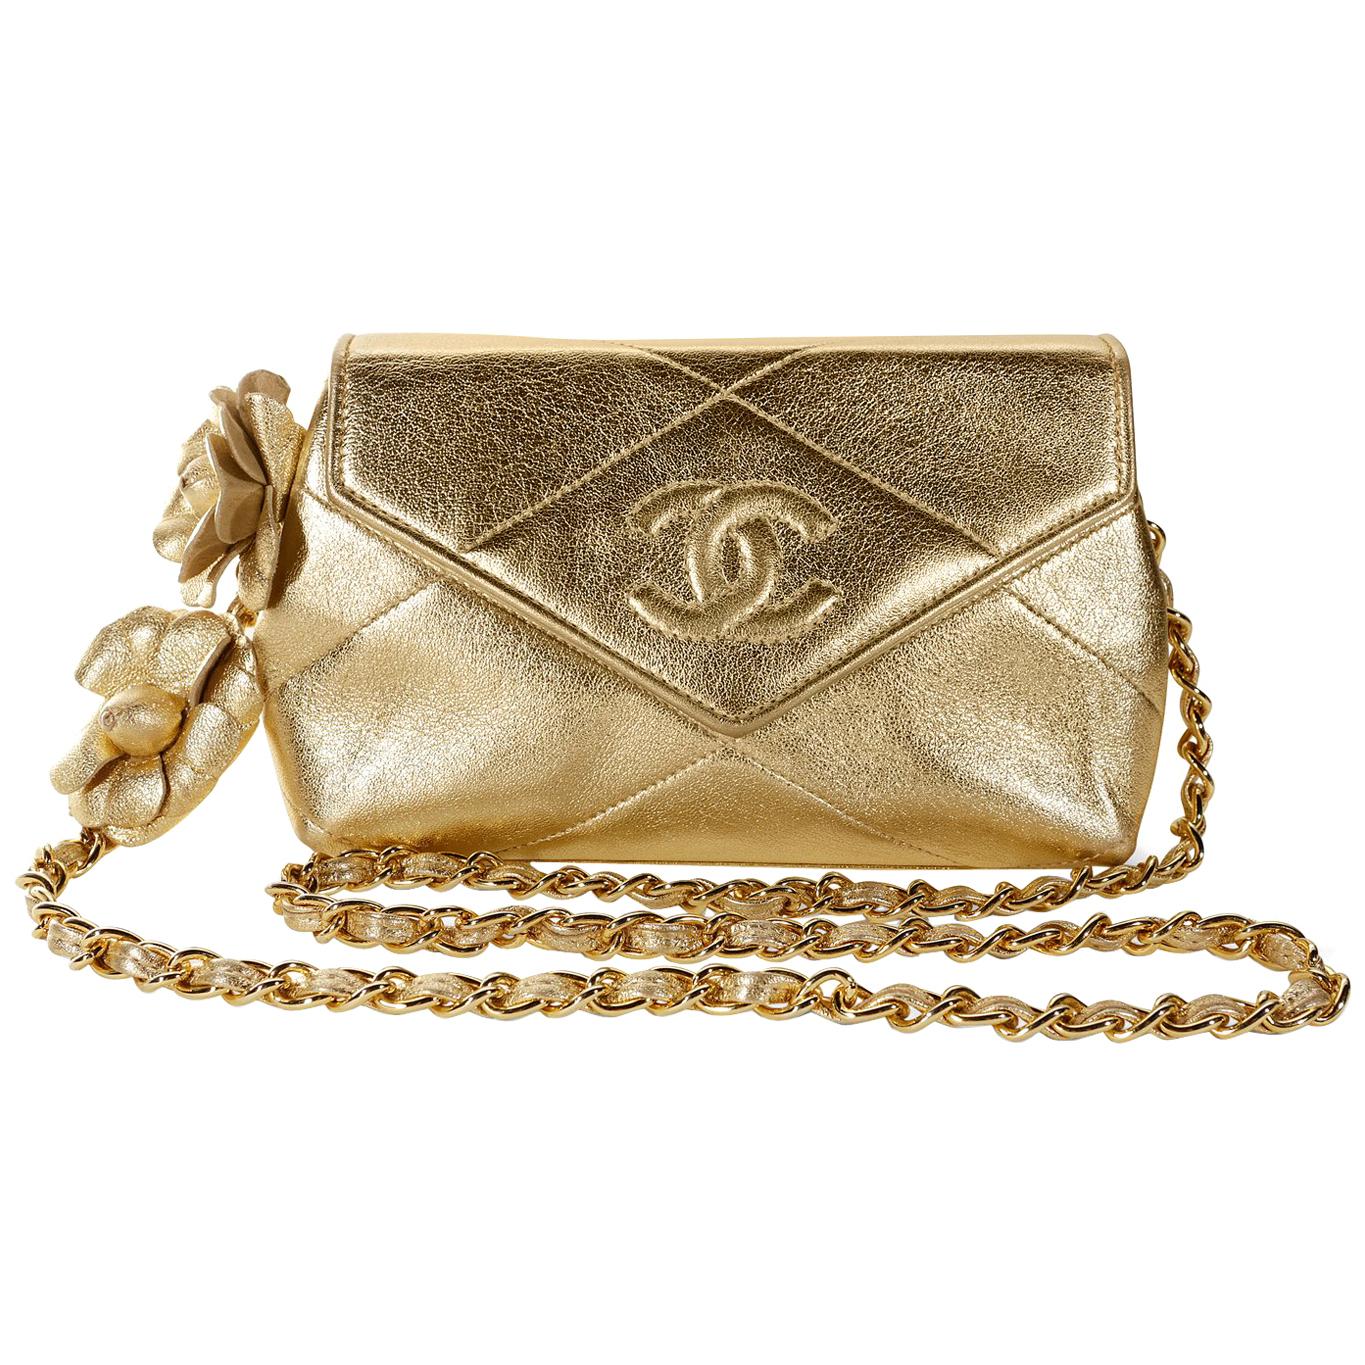 Chanel Gold Leather Camellia Flower Vintage Evening Bag